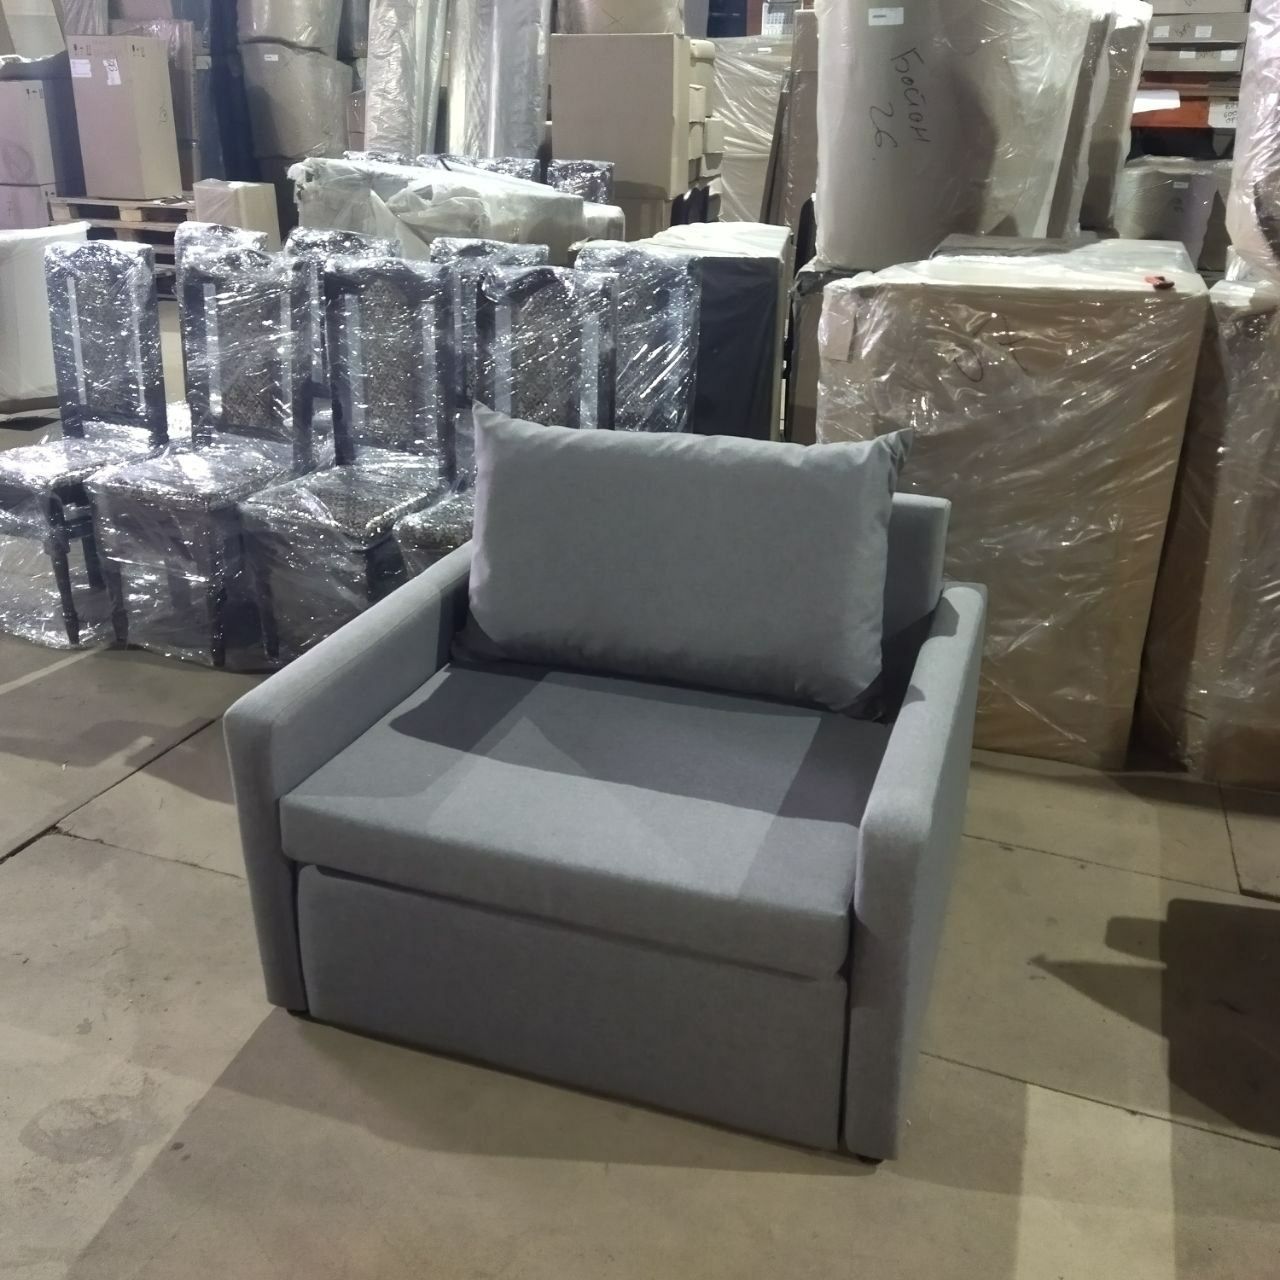 Новий диван та крісло в наявності на складі, супер ціна